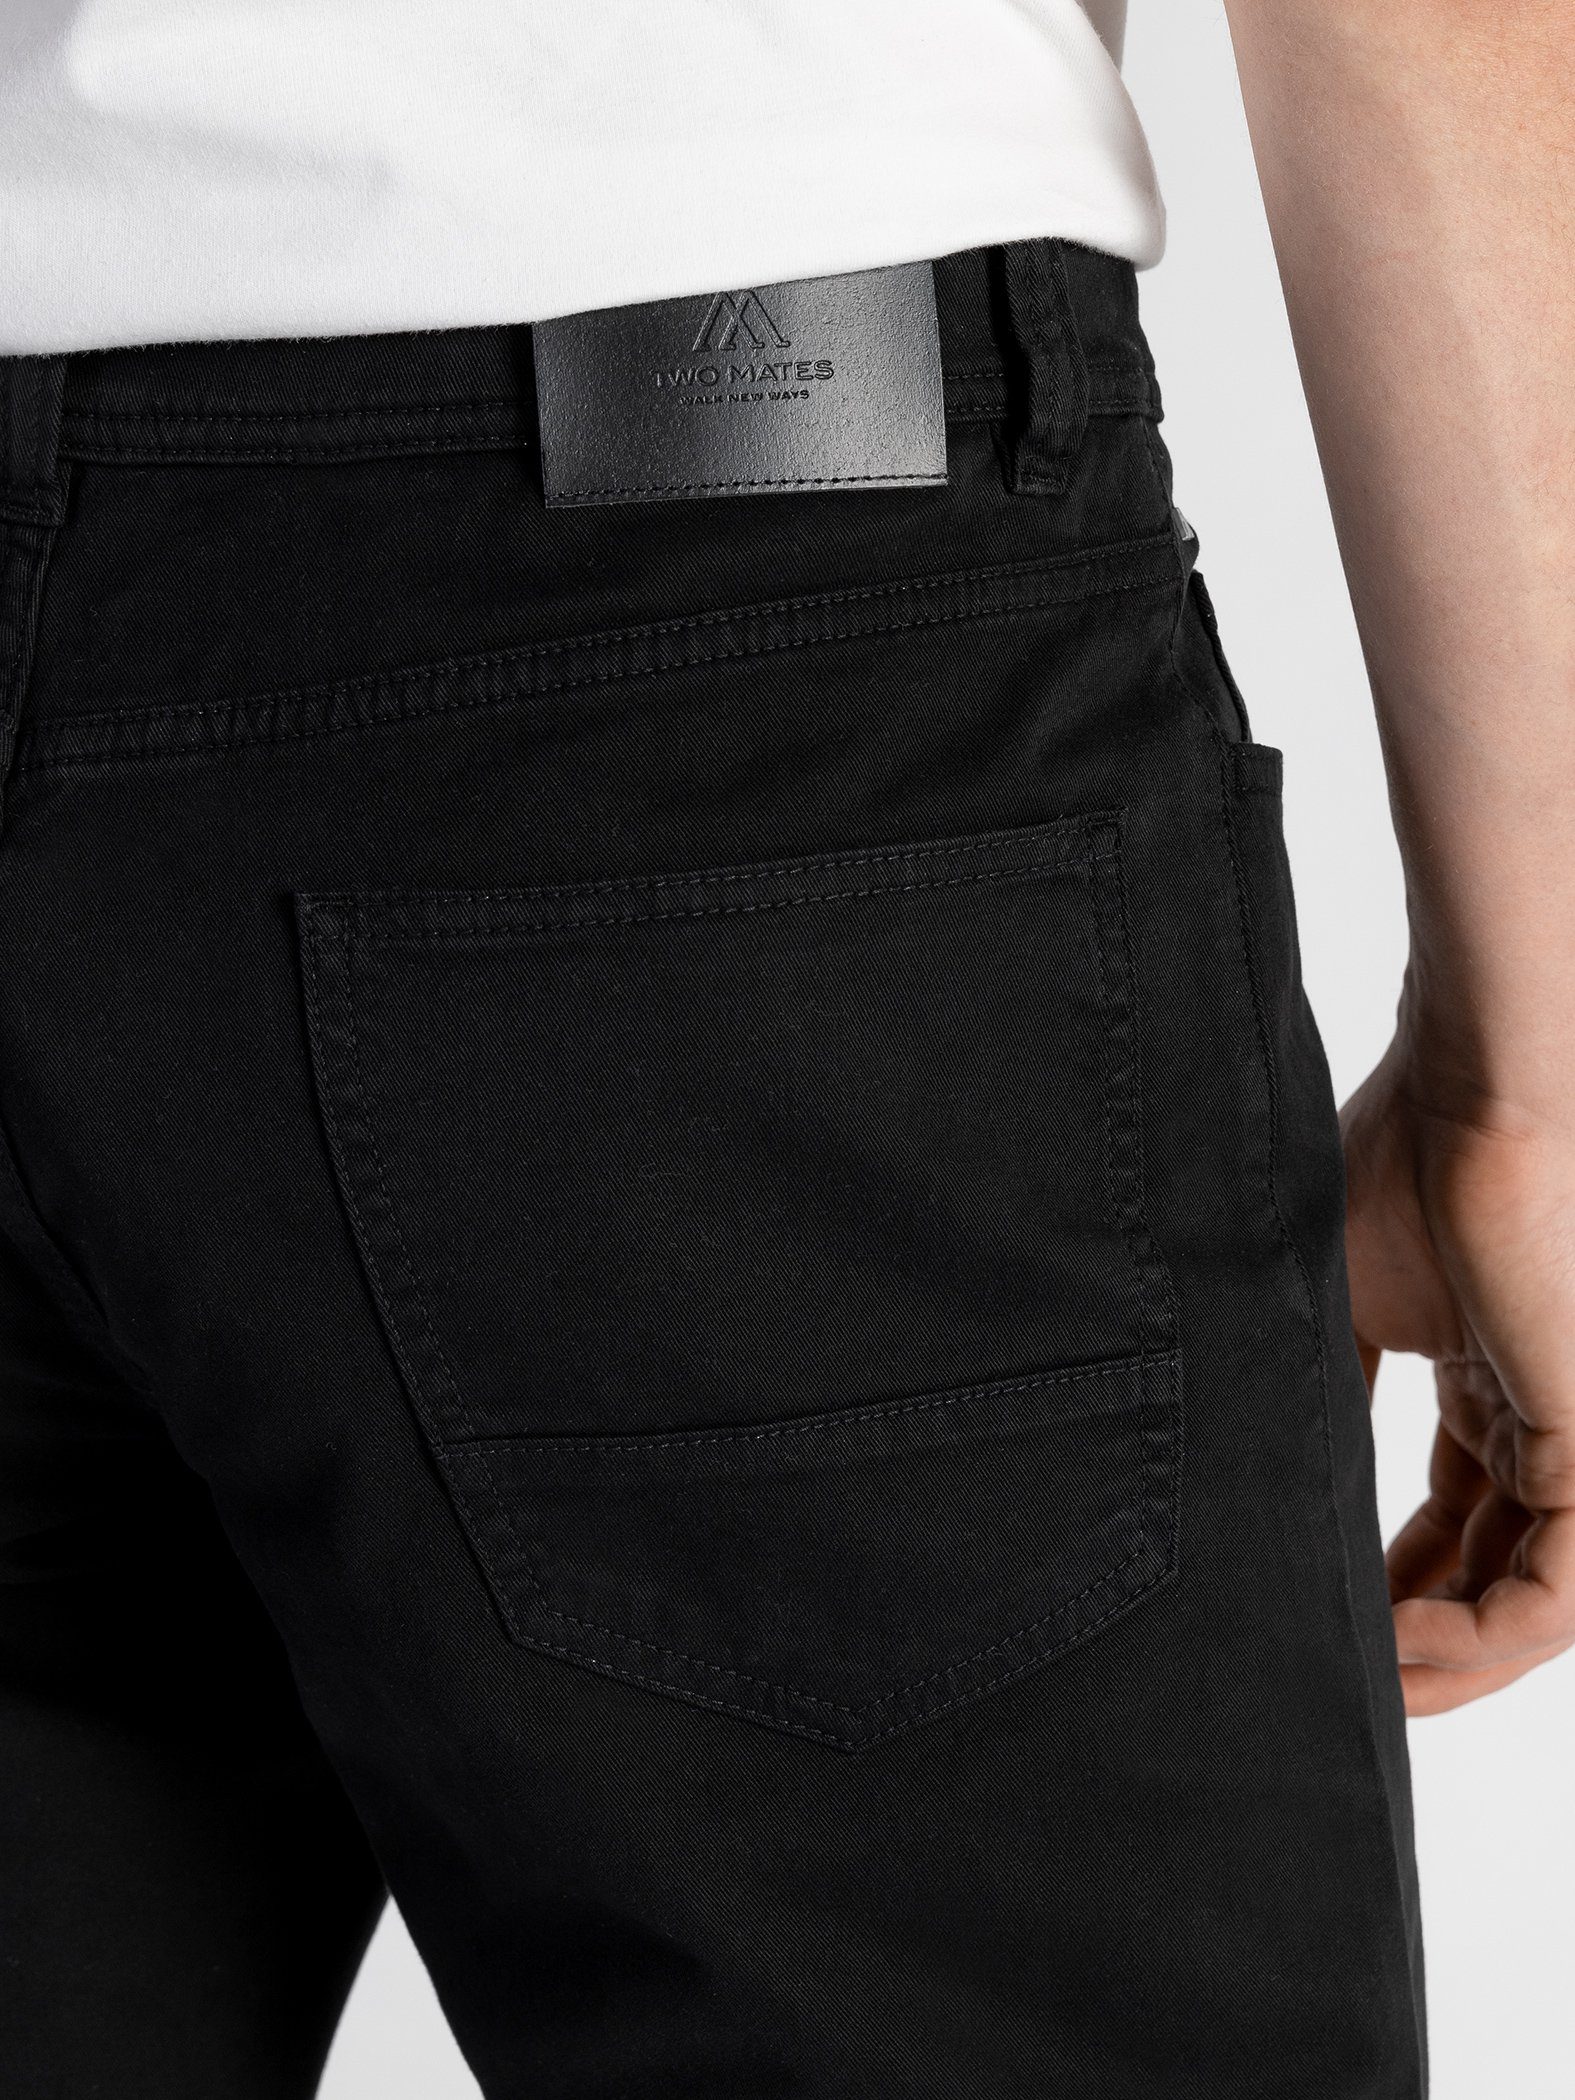 Farbauswahl, TwoMates Bund, elastischem Stoffhose mit Schwarz GOTS-zertifiziert 5-Pocket